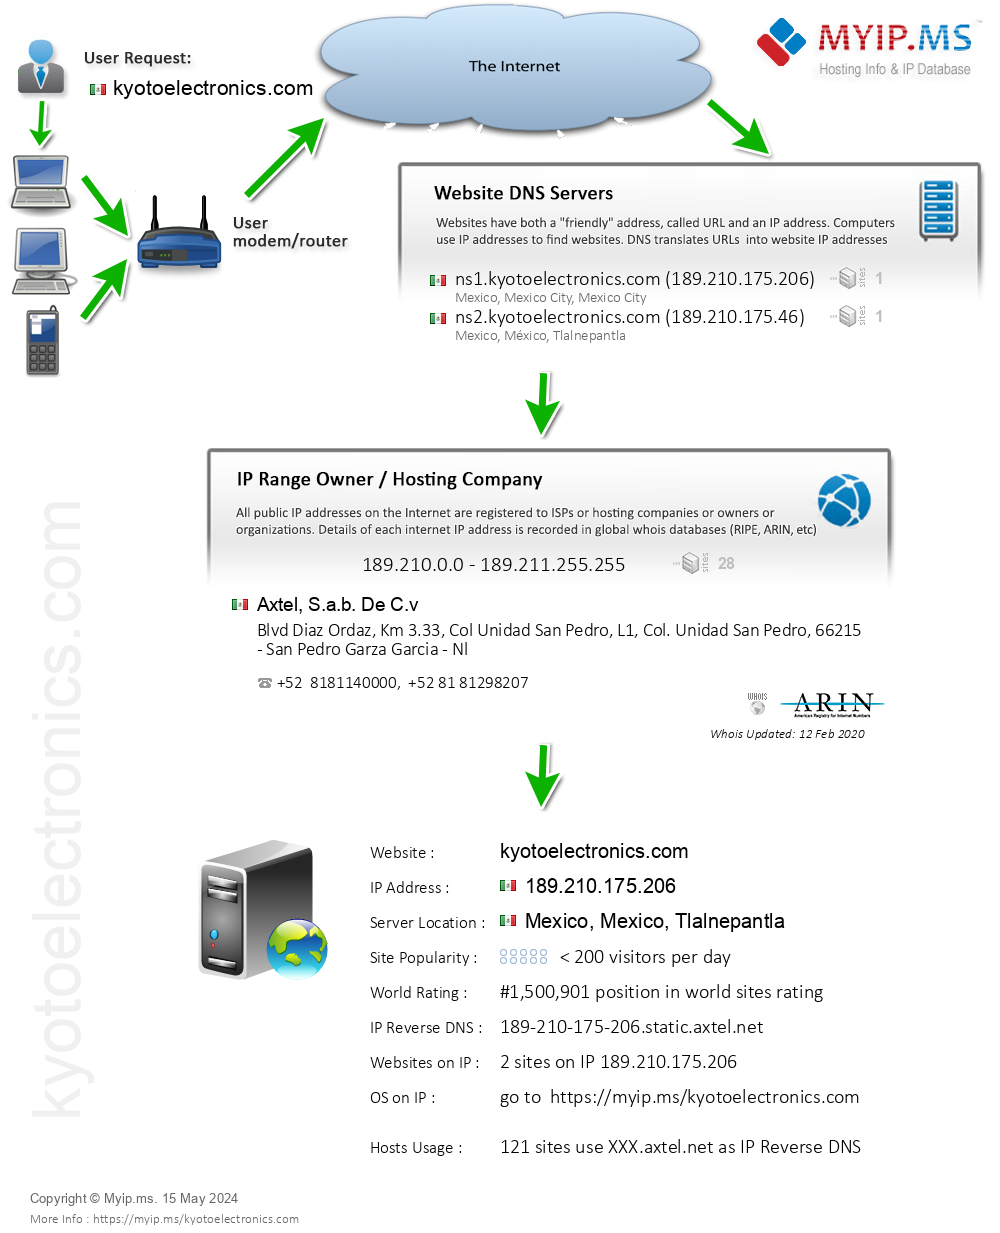 Kyotoelectronics.com - Website Hosting Visual IP Diagram